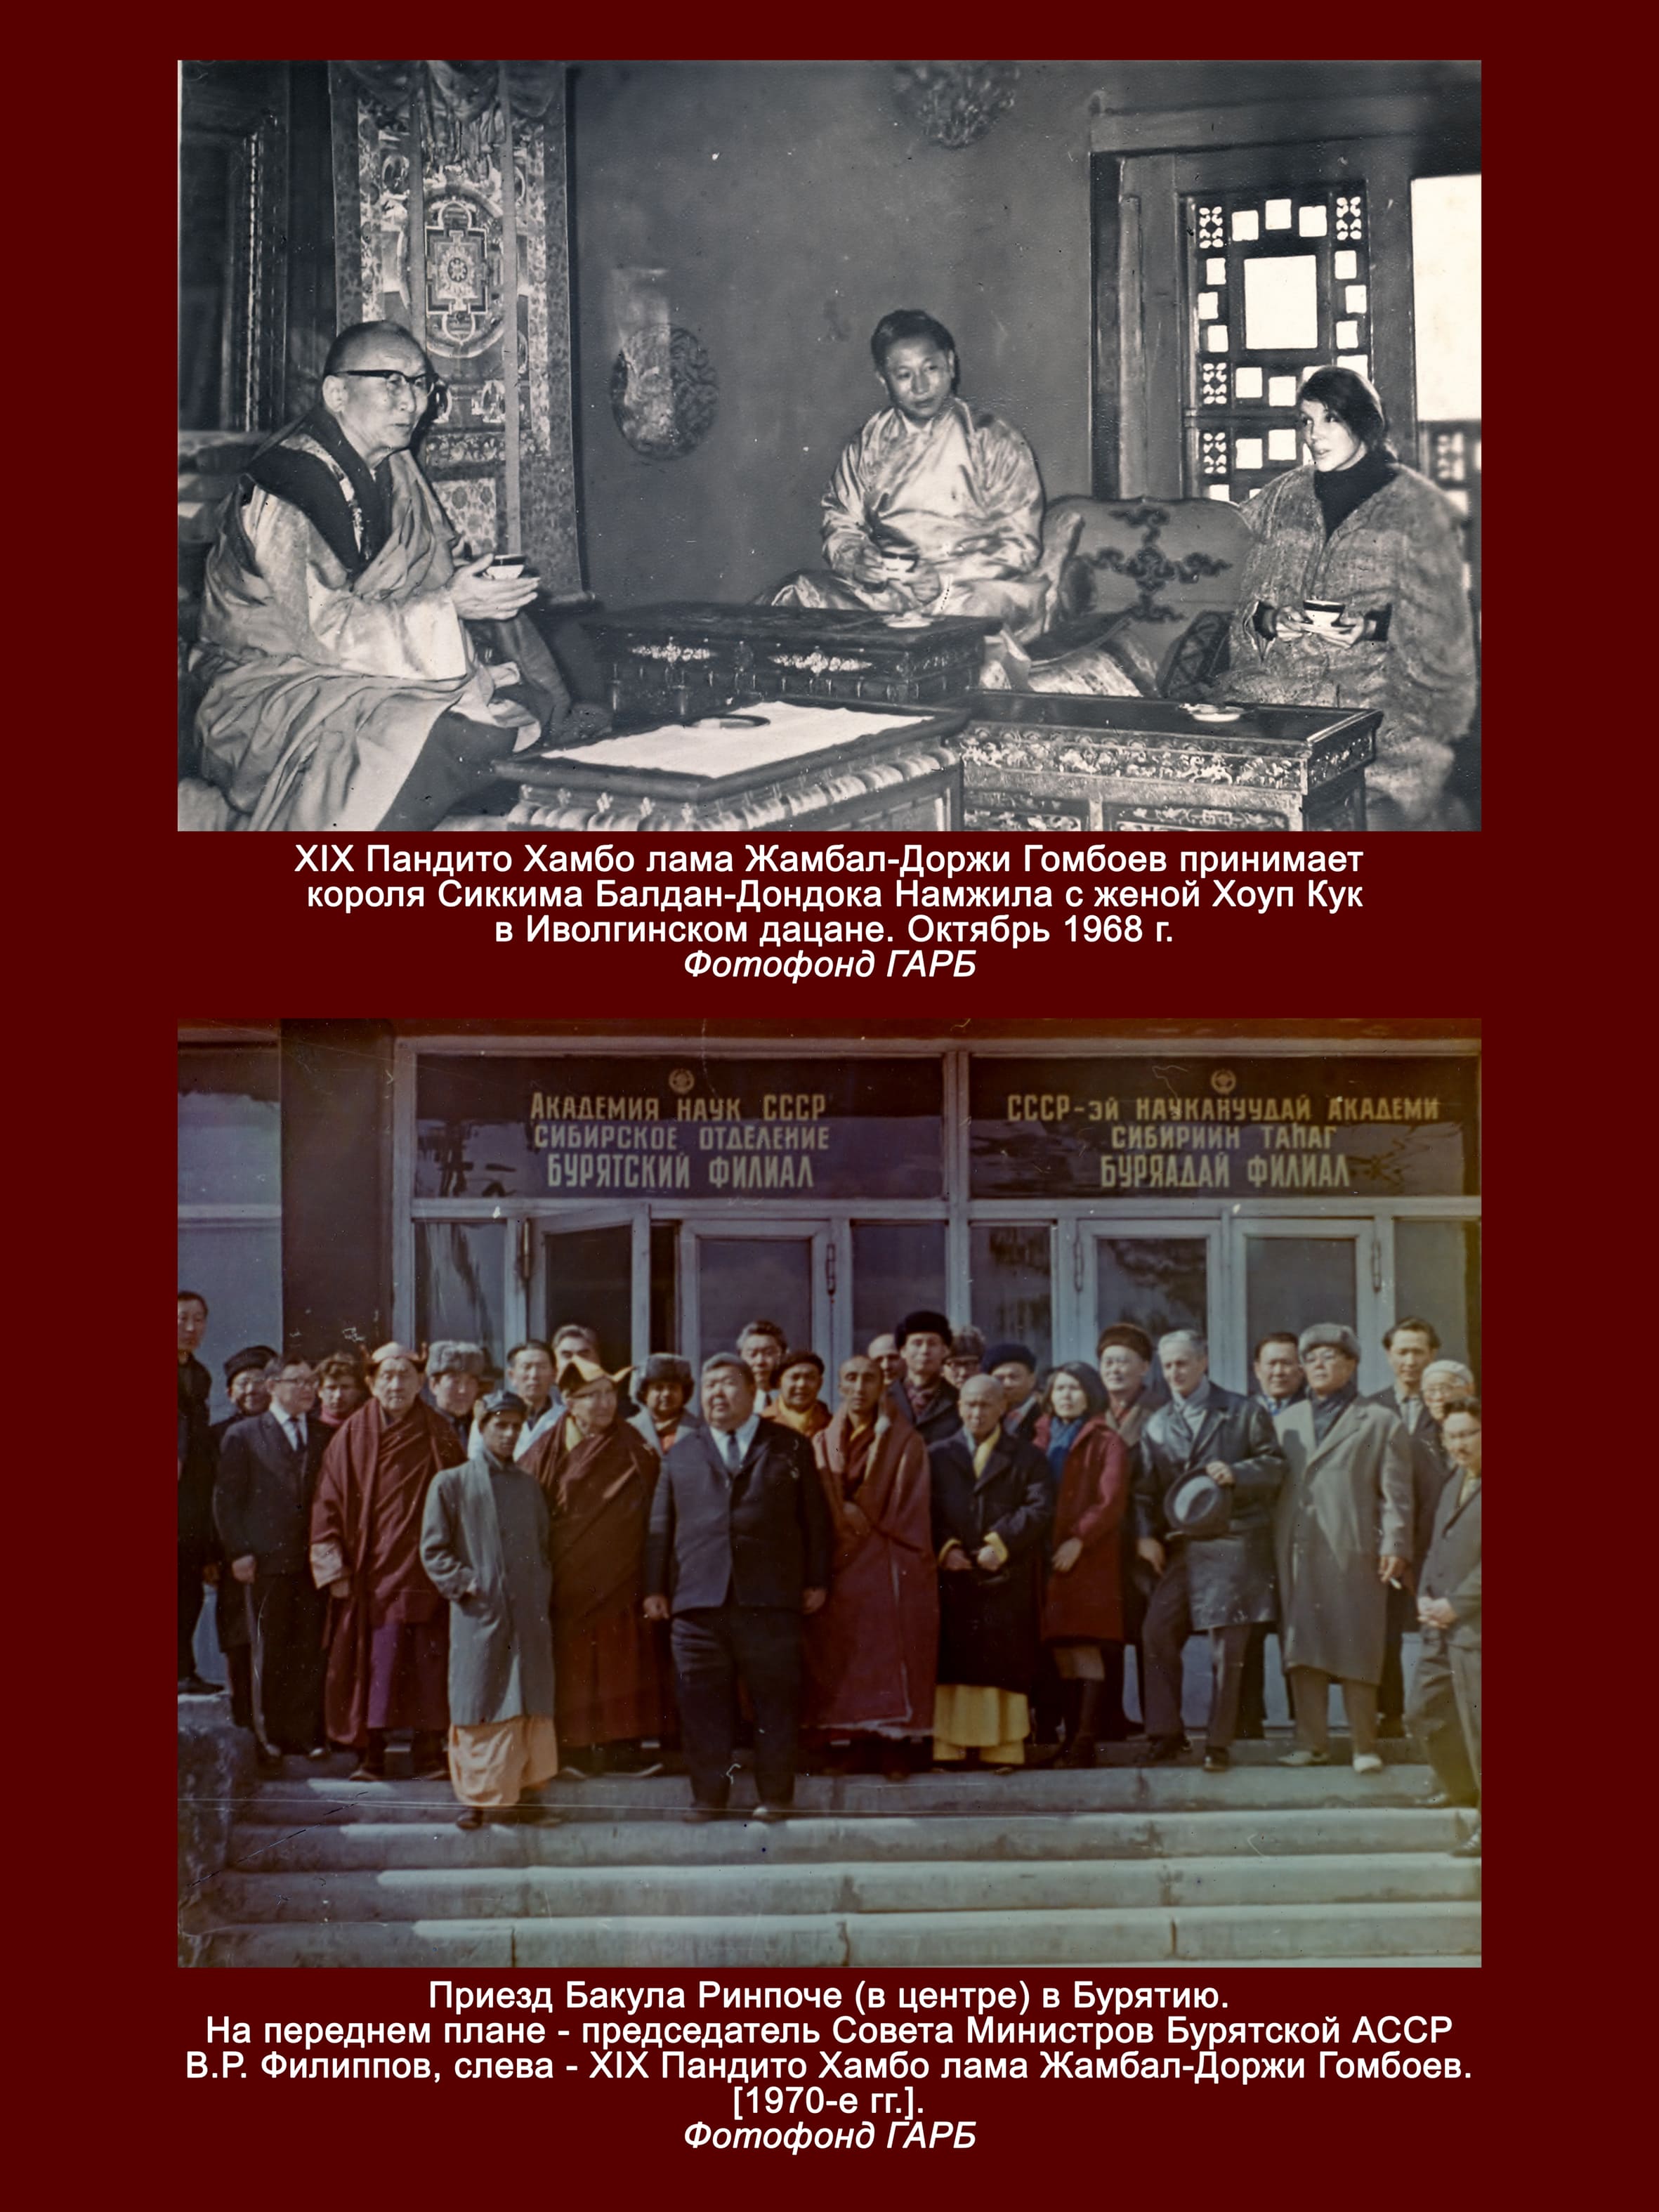 Государственный архив Бурятии готовит выставку,  посвященную 260-летию Института Пандито Хамбо лам России